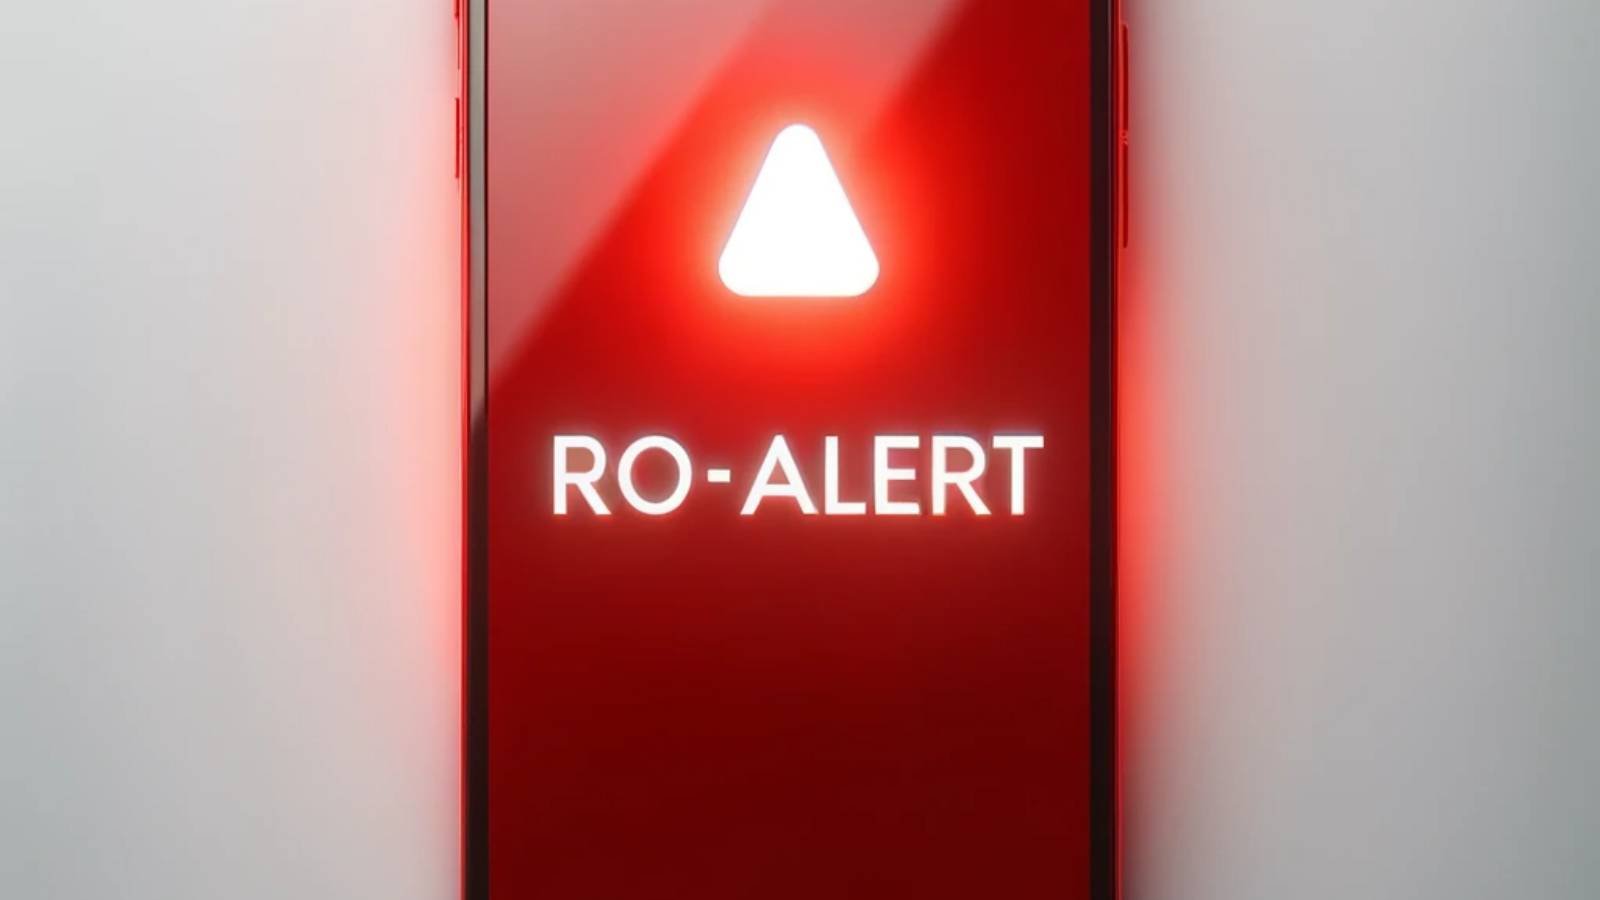 RO-ALERT Varoitusviesti, joka hälytti romanialaiset Ploiestista